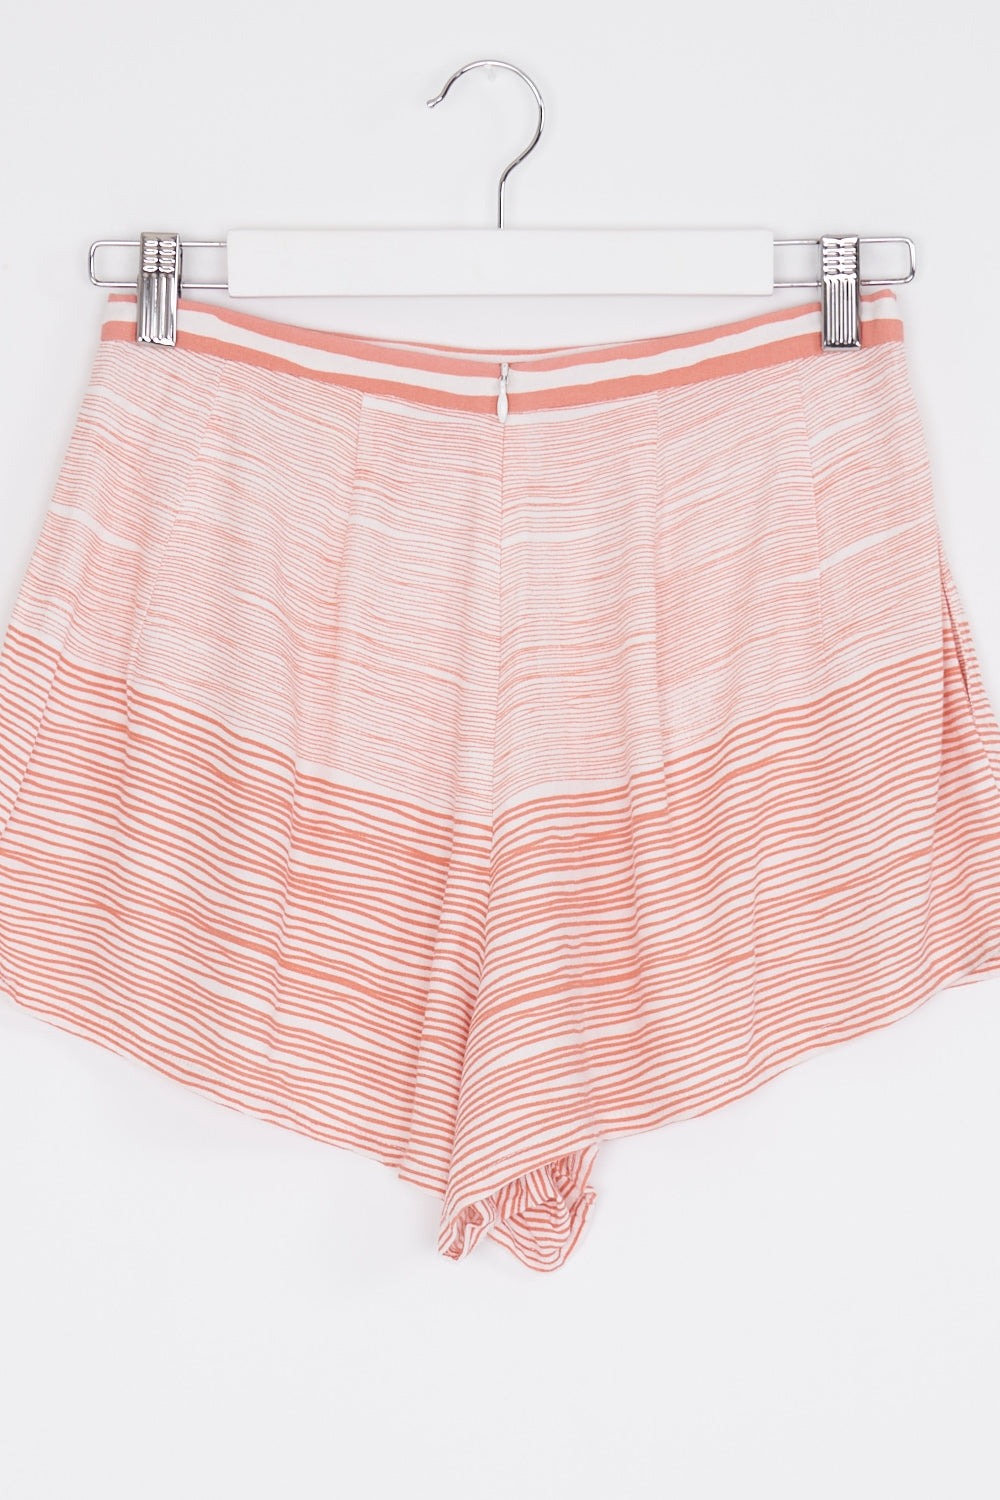 Zulu & Zephyr Pink Patterned Shorts 8